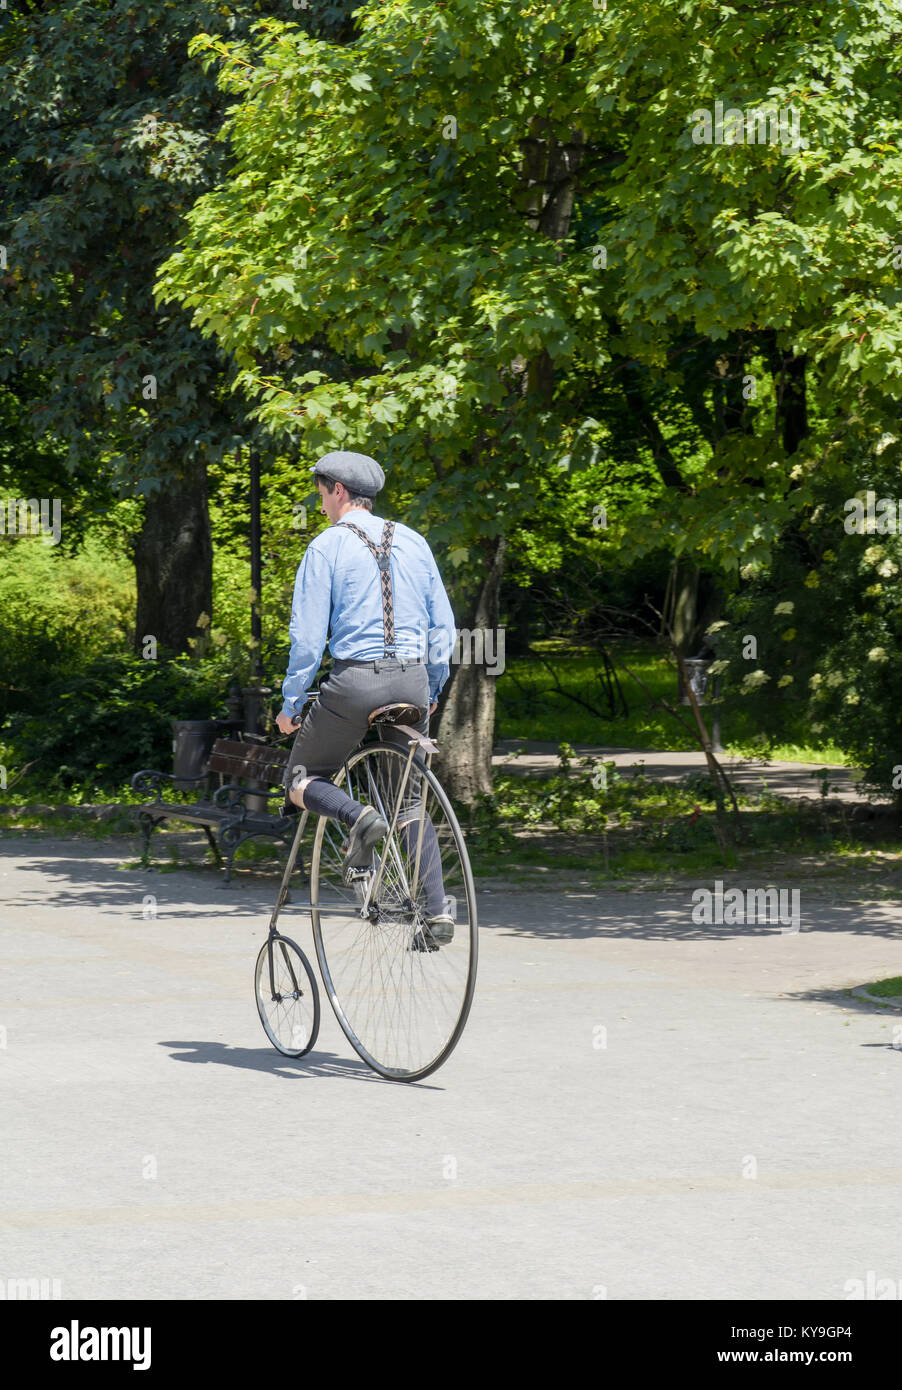 Junge Radfahrer in alten gekleidet, altmodische Kleidung reitet auf seinem amerikanischen Star Typ Fahrrad Stockfoto